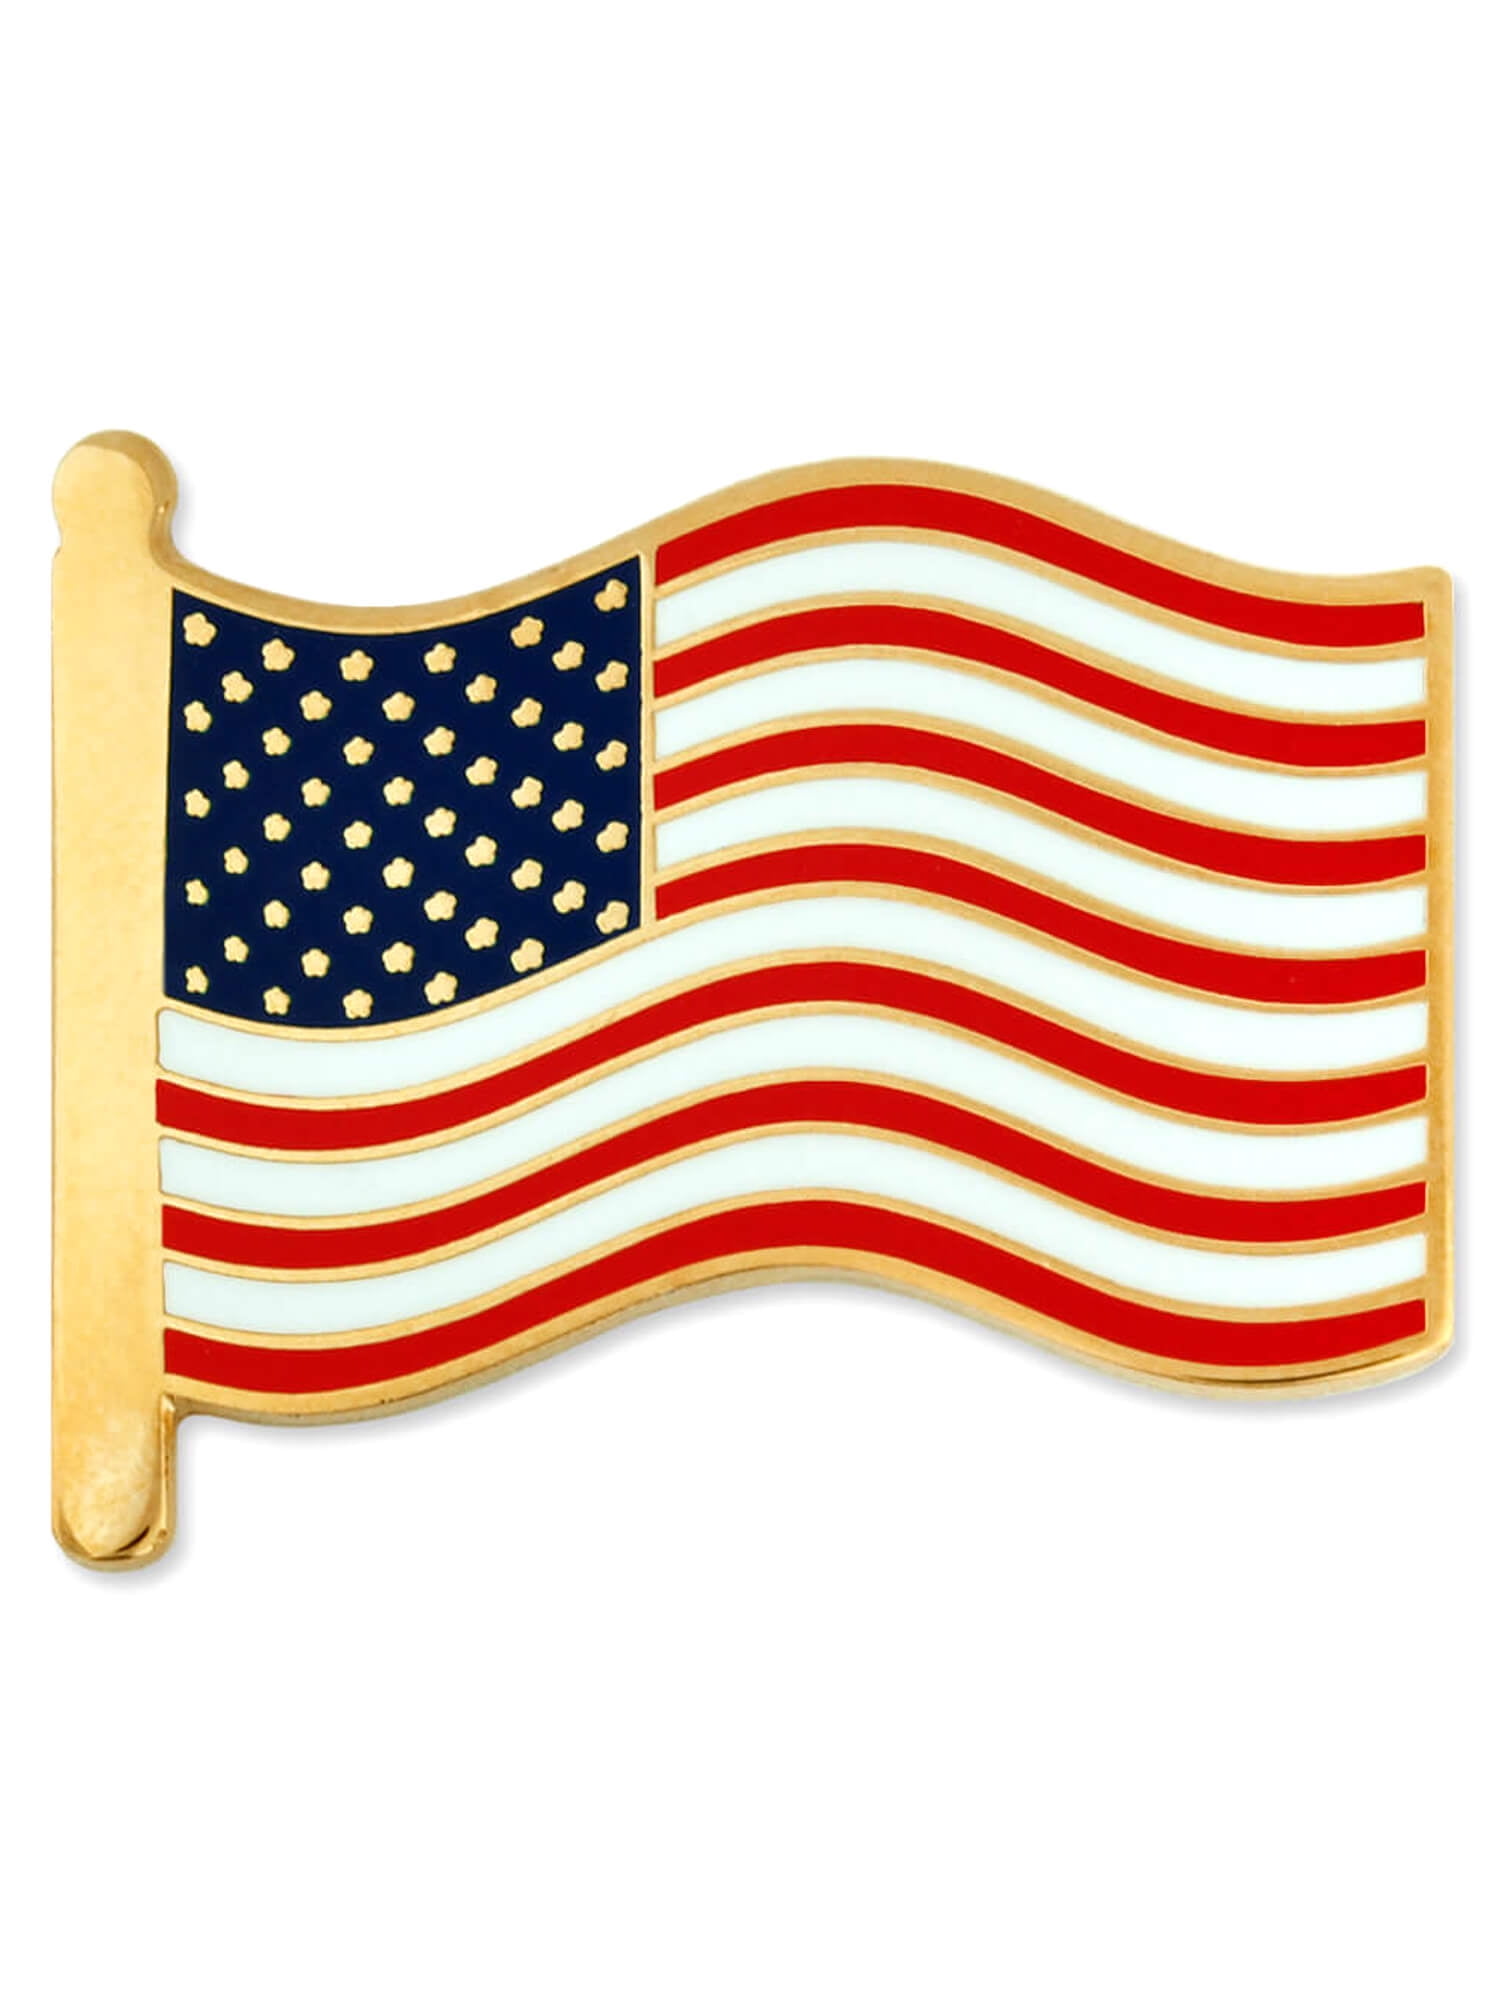 Vintage Missouri USA State Flag Lapel Travel Pin Gold Tone Enamel Collectible 